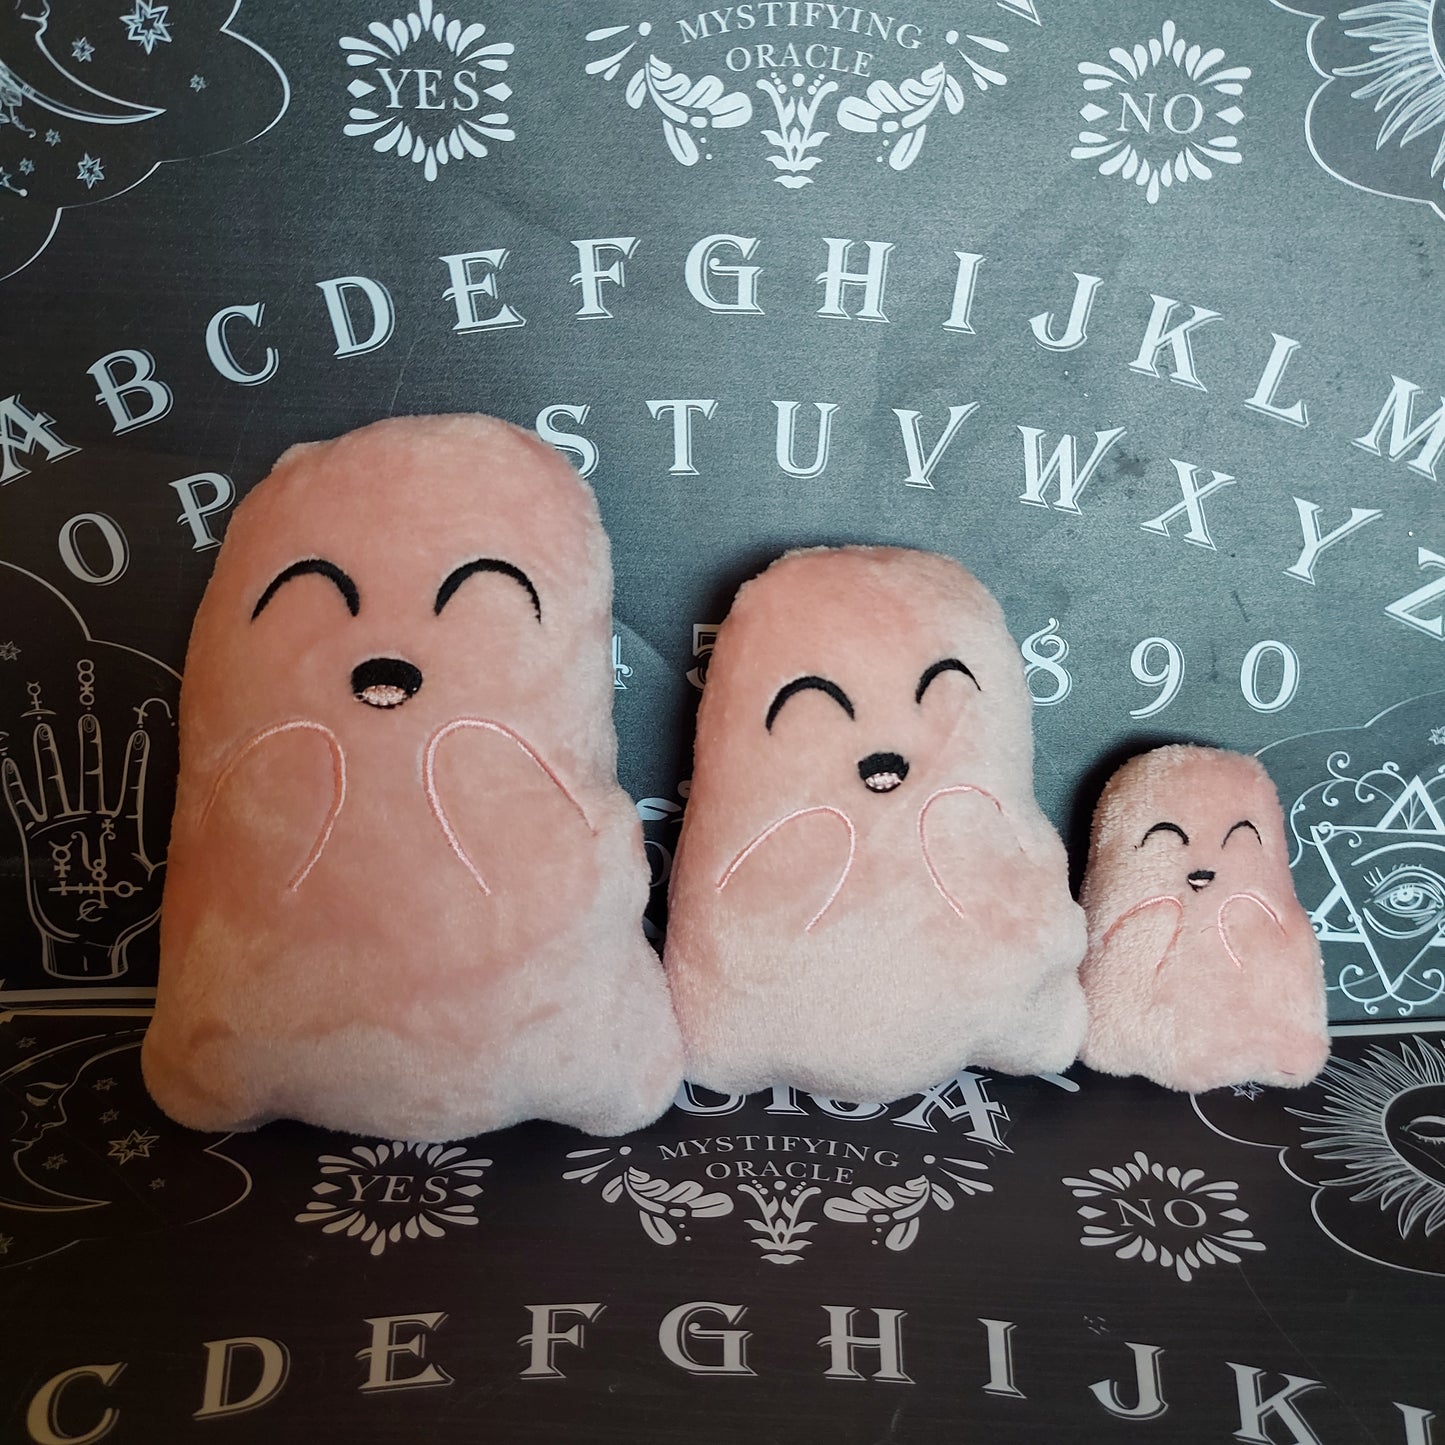 Ghosties Stuffed Toy